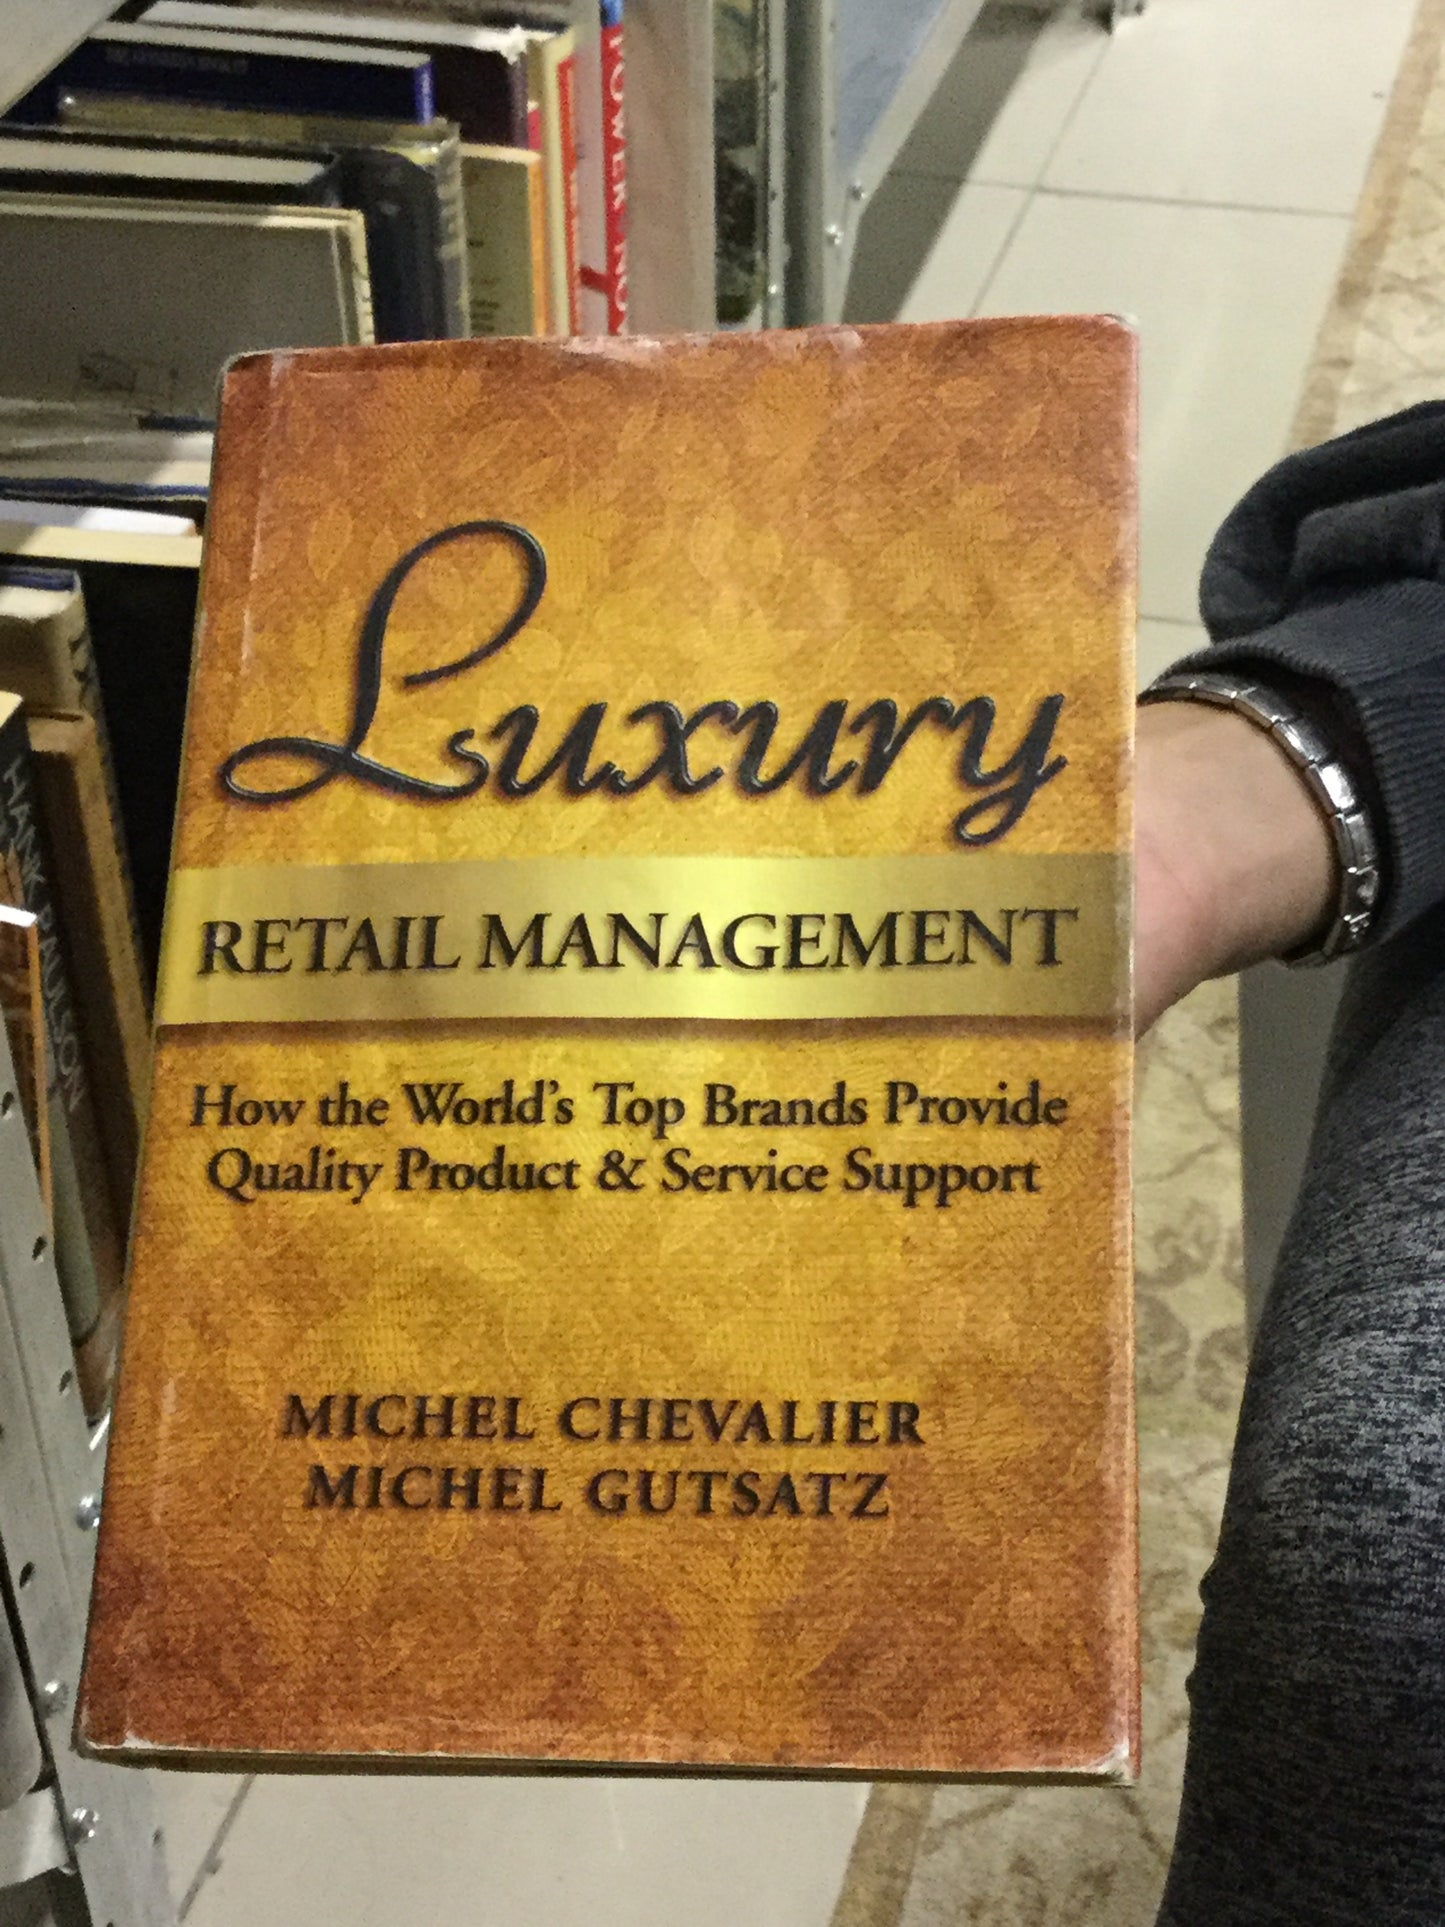 Luxury retail management, by Michel Chevalier, Michel Gutsatz (used)